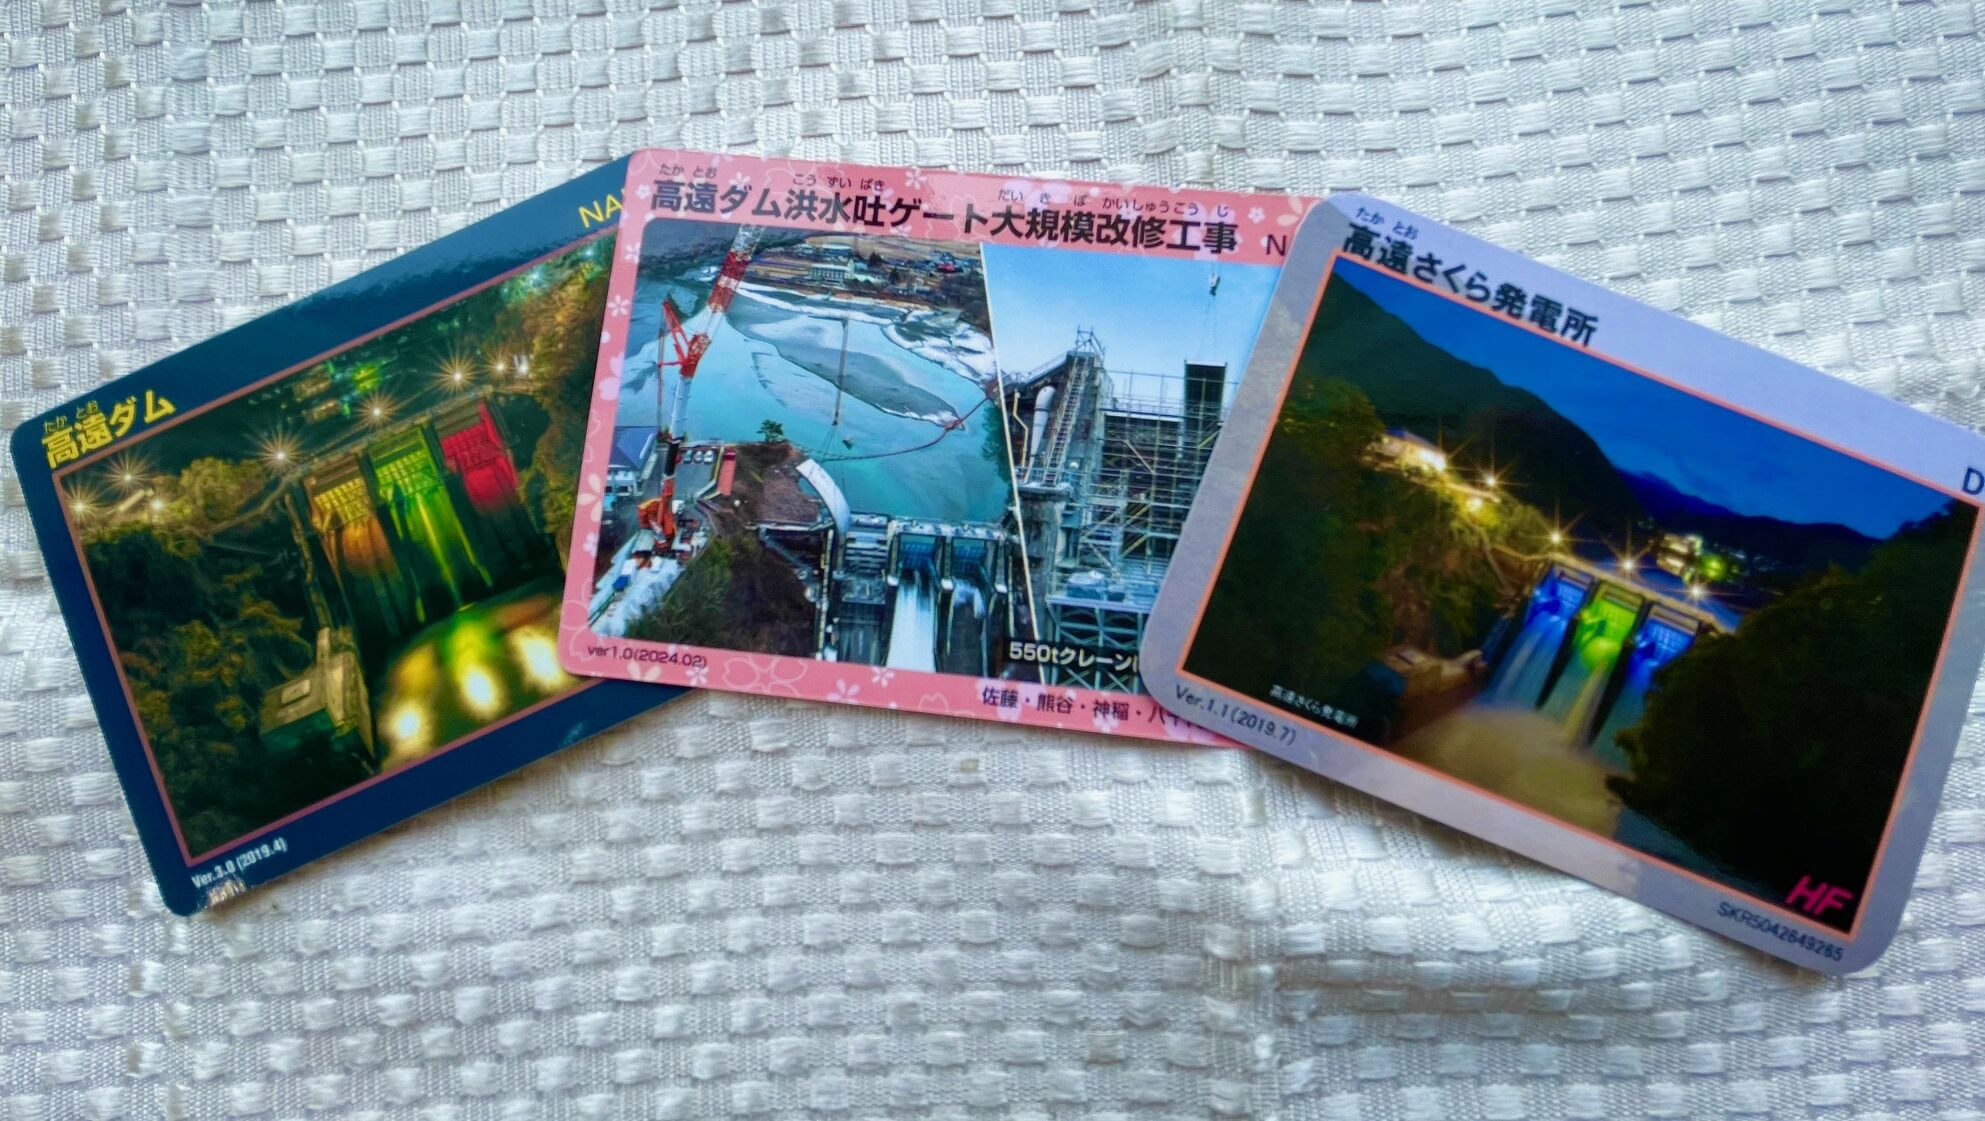 マンホールカード・トンネル・峠カード配布終了のお知らせ